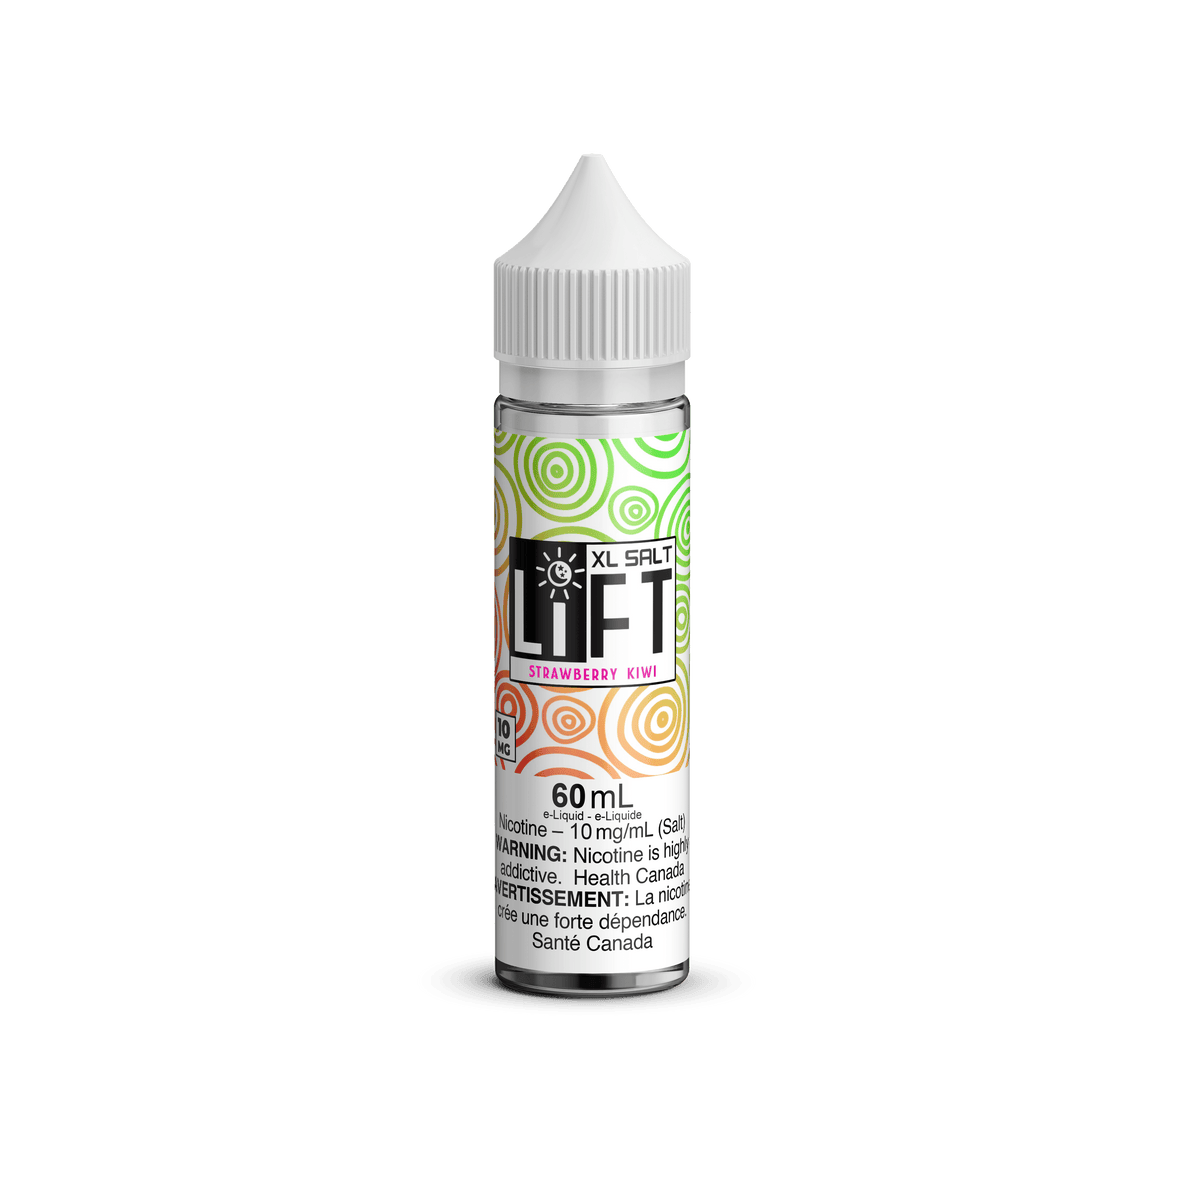 LIFT XL SALT - Strawberry Kiwi available on Canada online vape shop